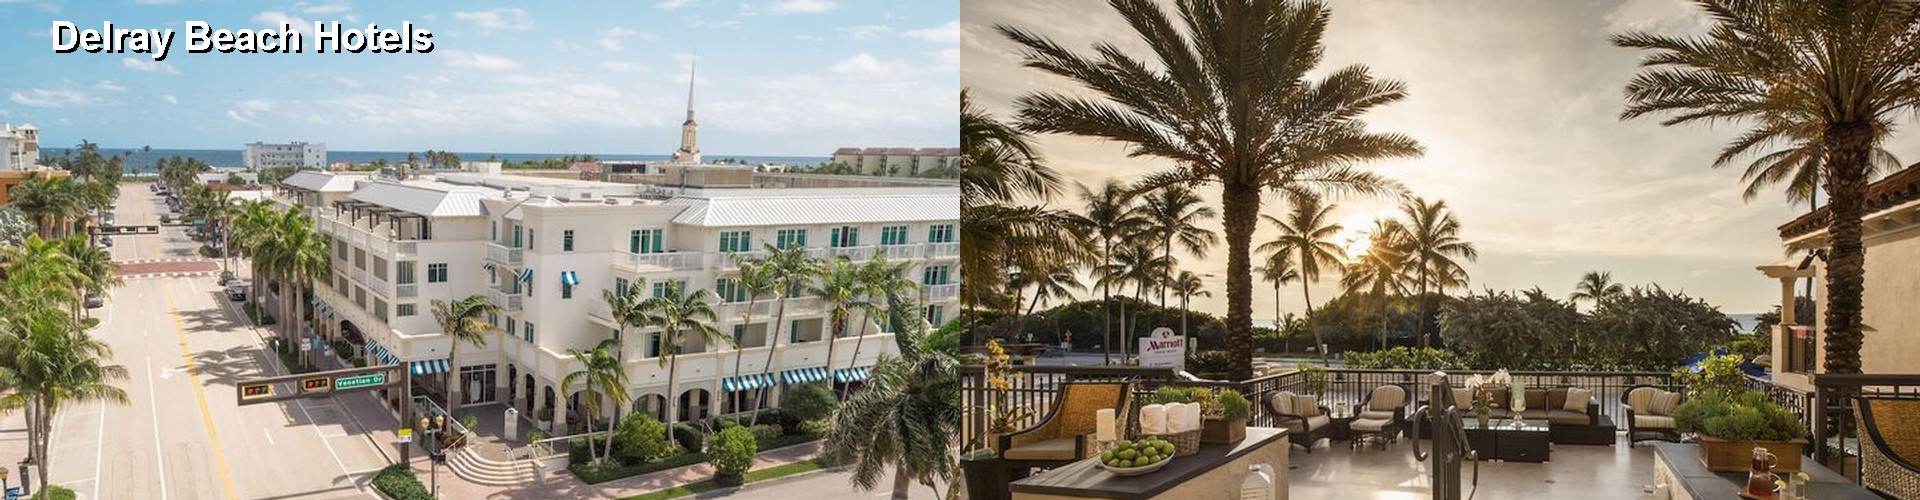 5 Best Hotels near Delray Beach